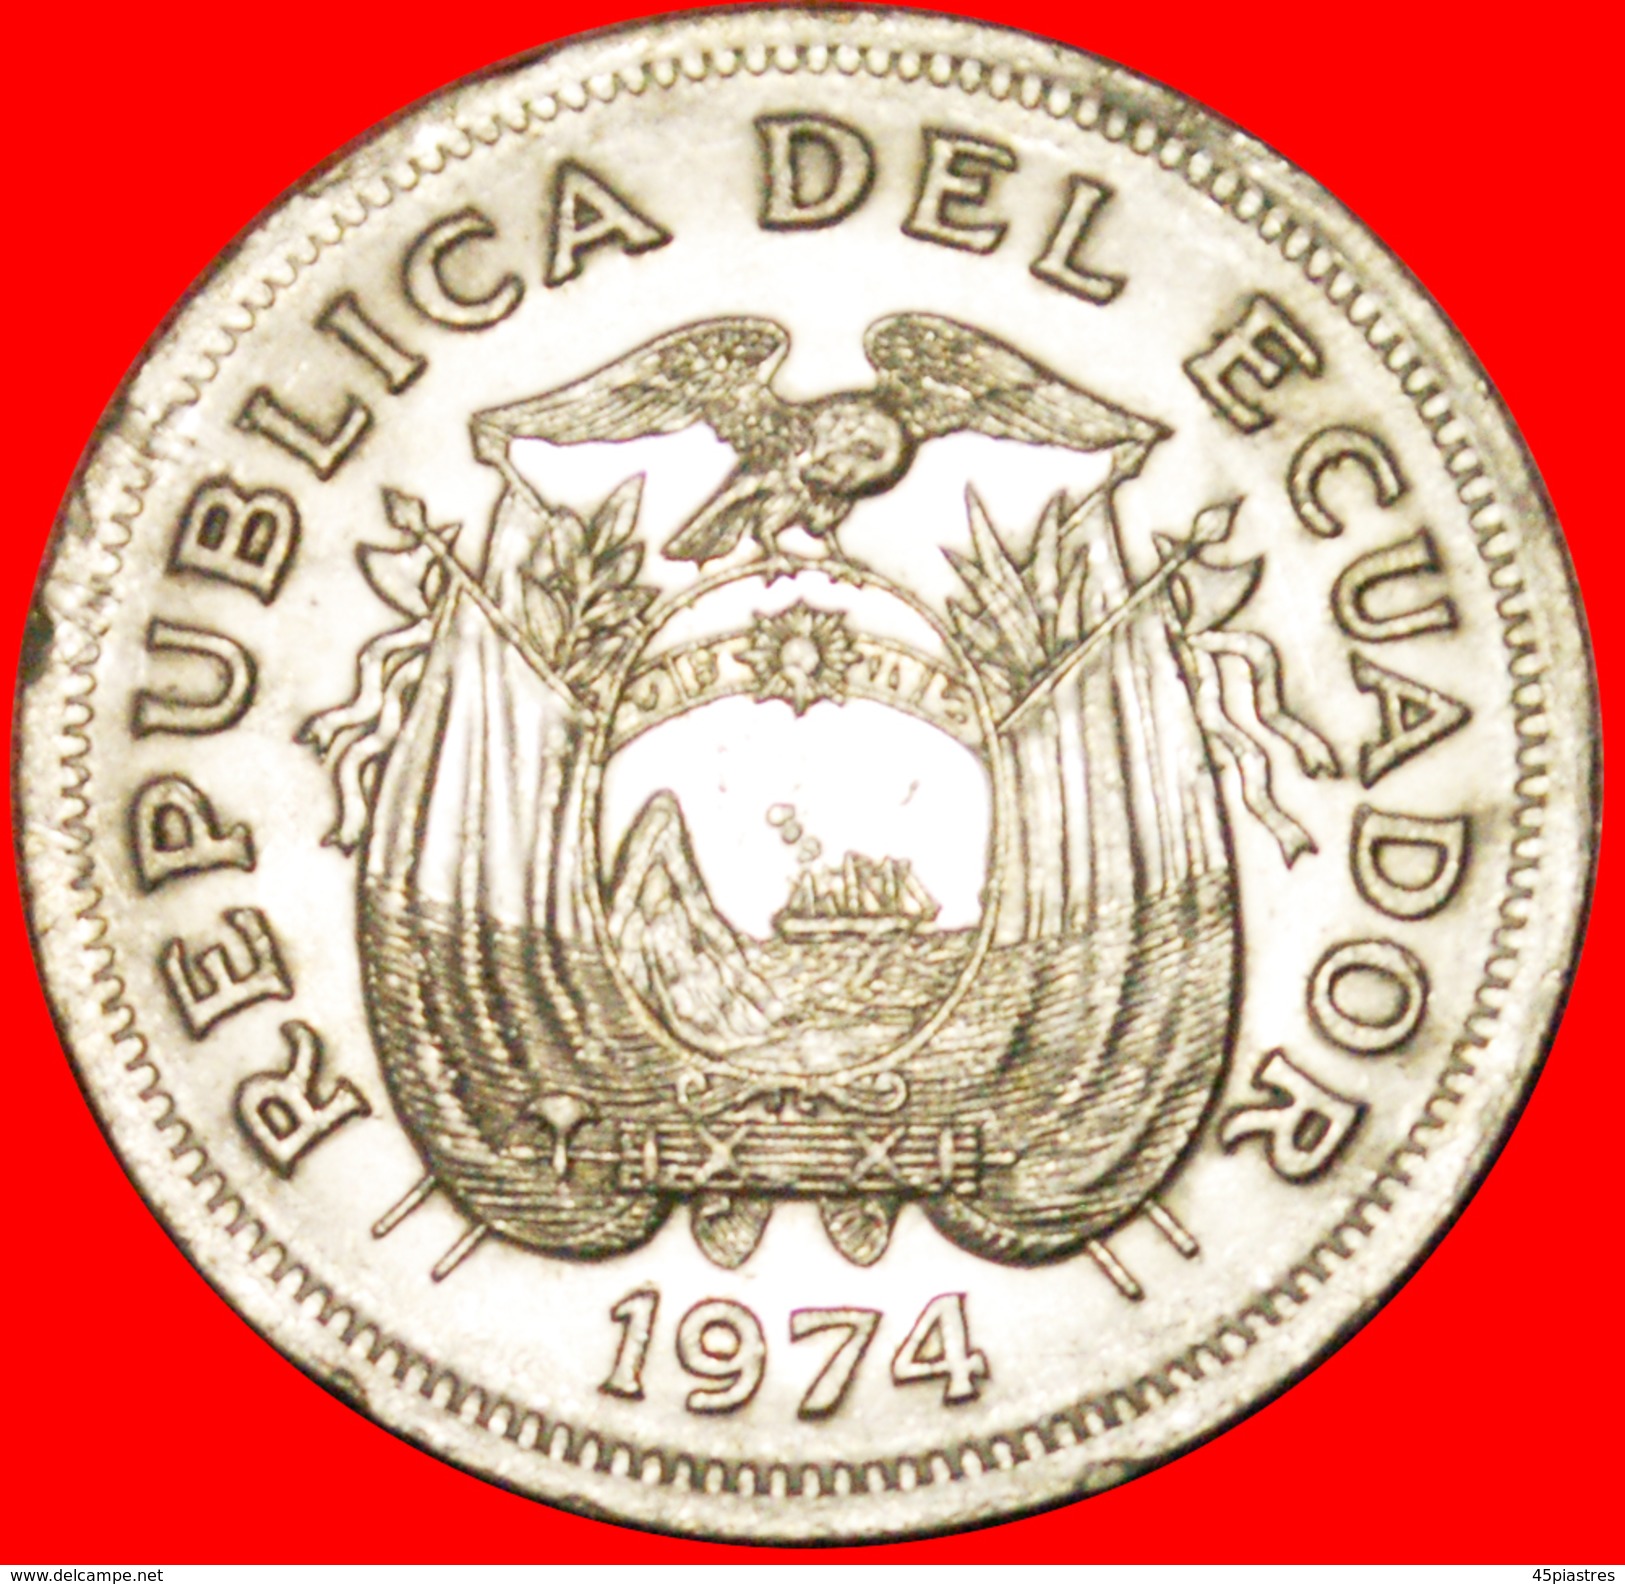 § ZODIAC: ECUADOR &#x2605; 1 SUCRE 1974! LOW START&#x2605; NO RESERVE! Antonio José De Sucre (1795-1830) - Ecuador